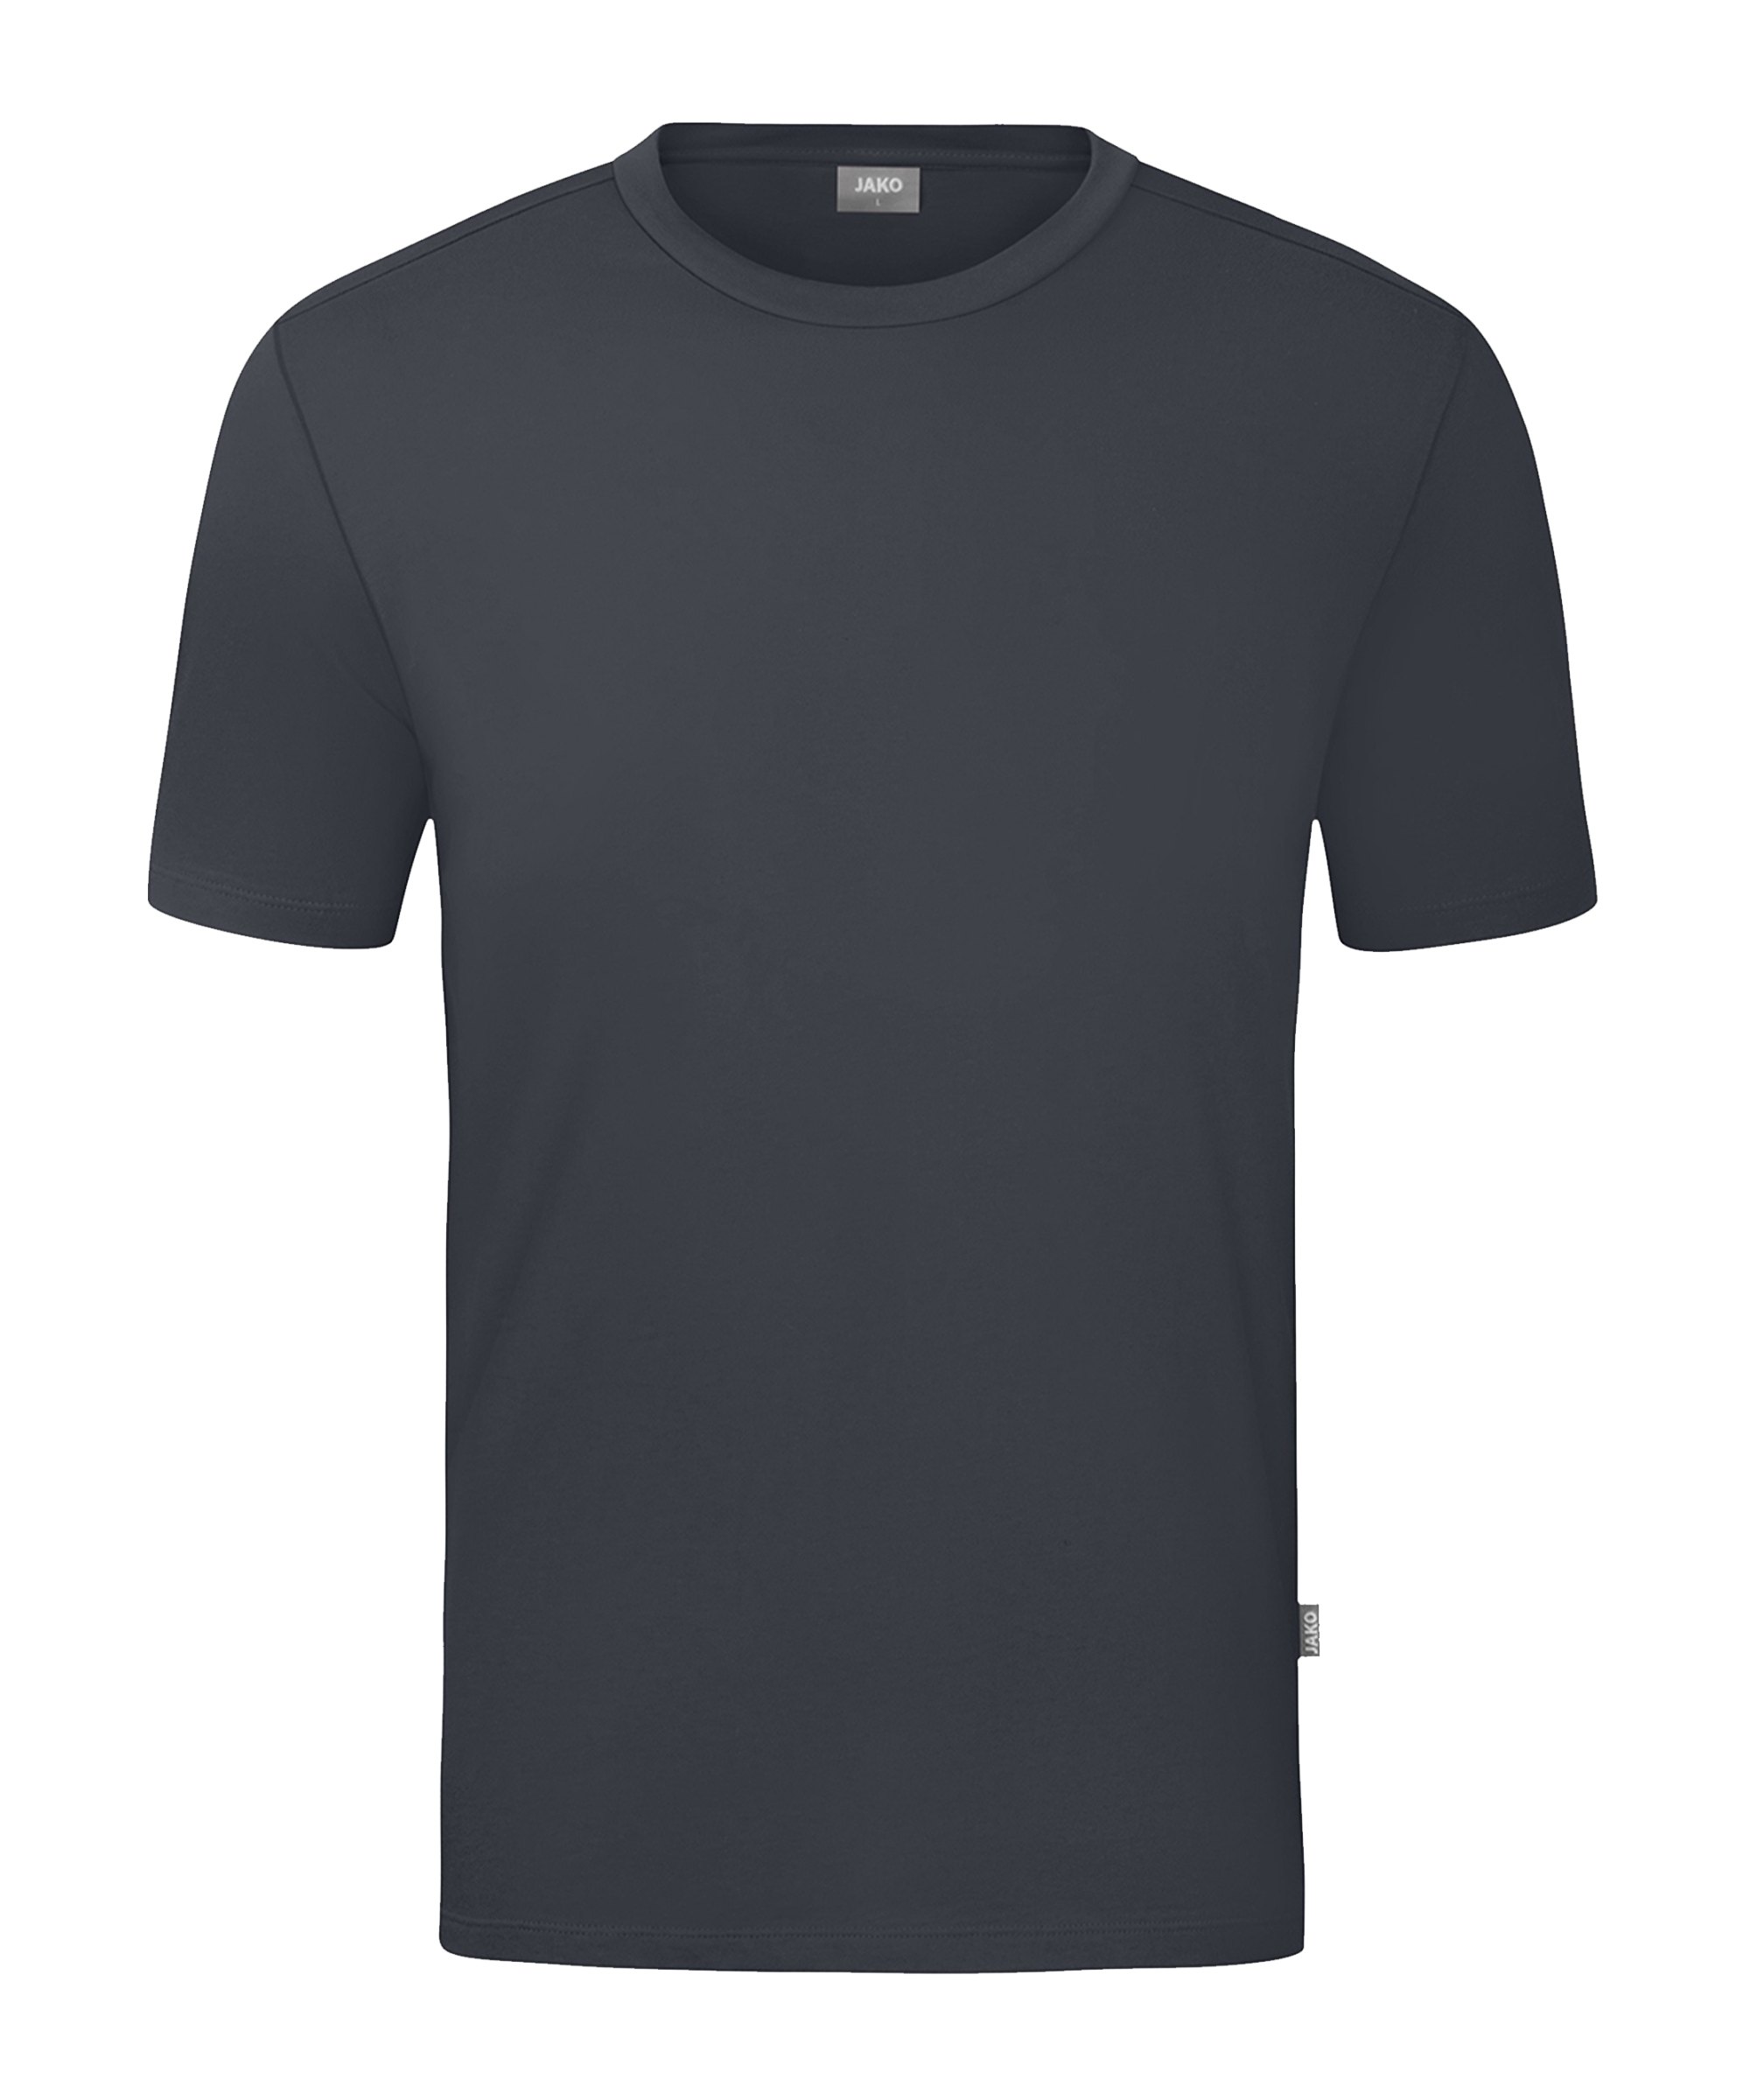 JAKO Organic T-Shirt Grau F830 - grau